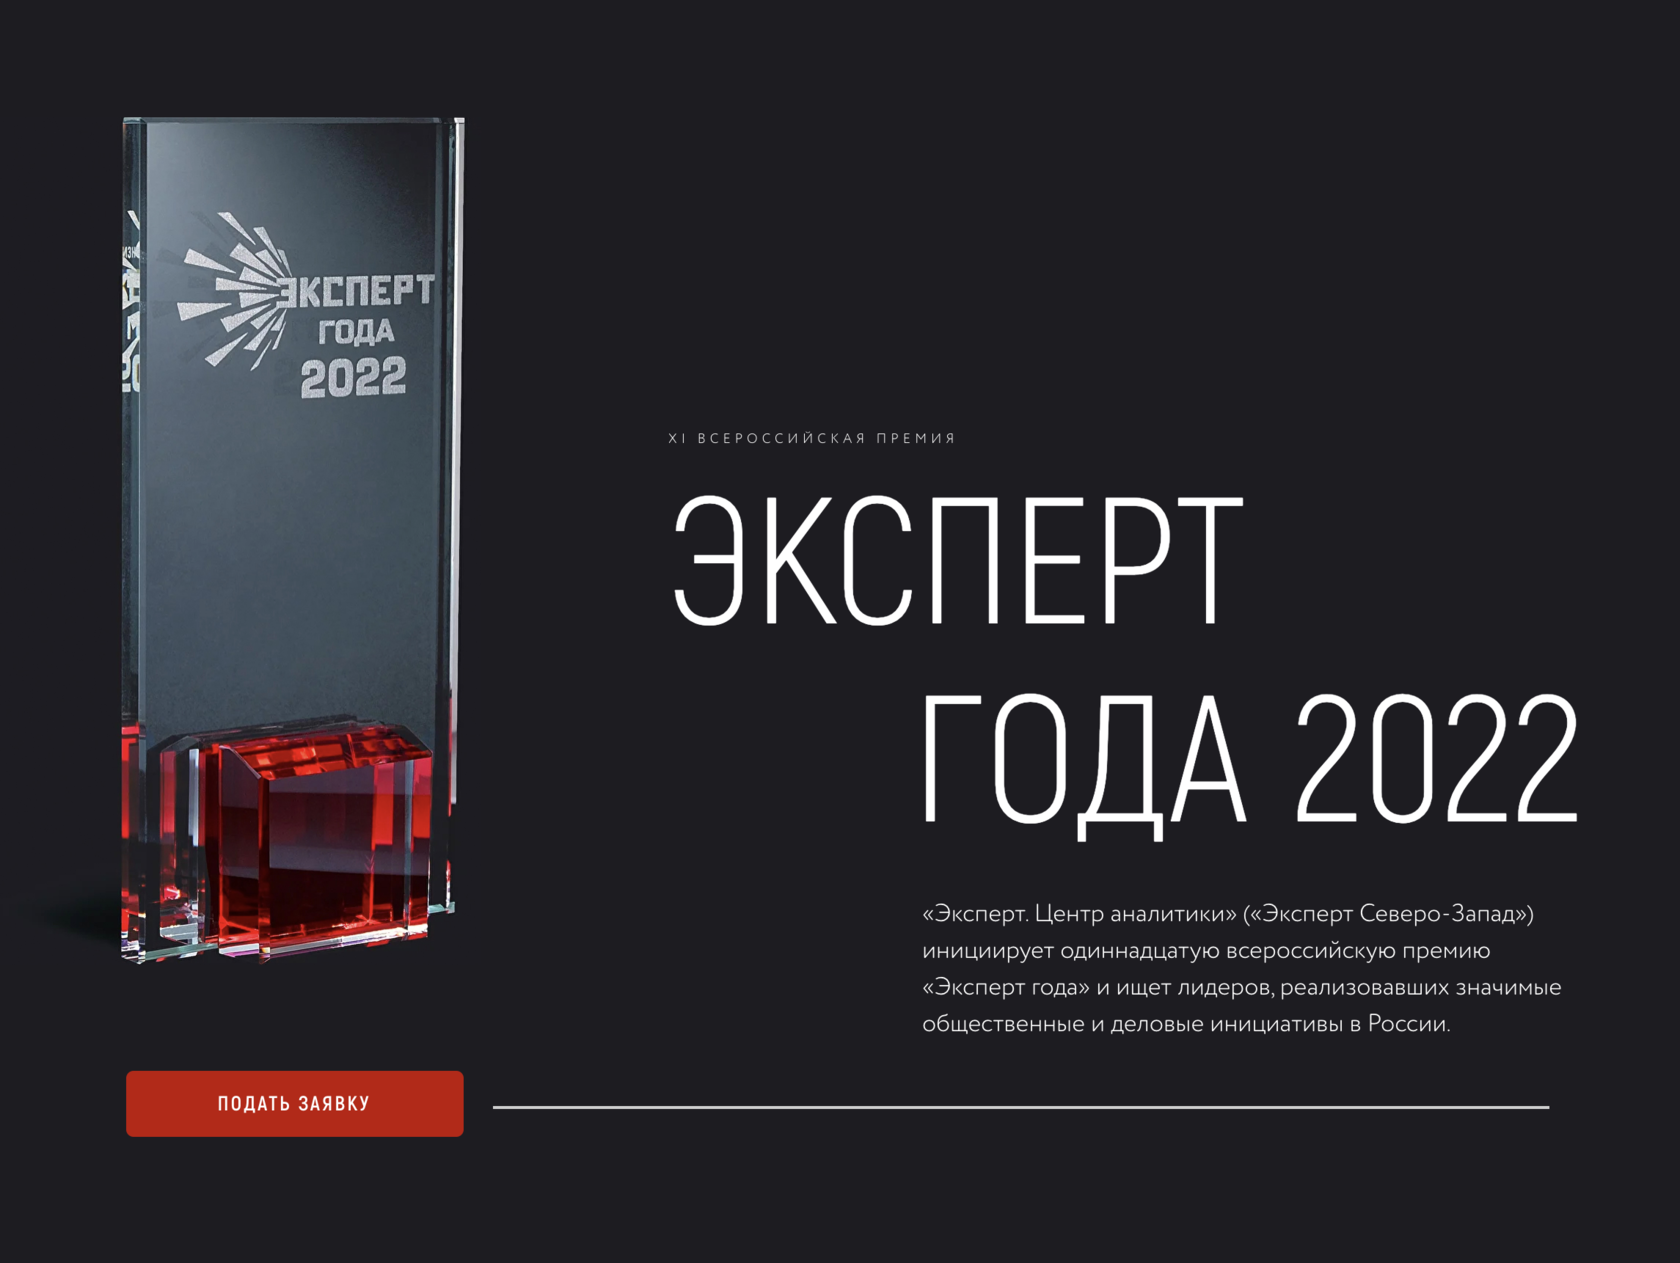 Принимаются заявки на участие в XI Всероссийской премии «Эксперт года 2022»